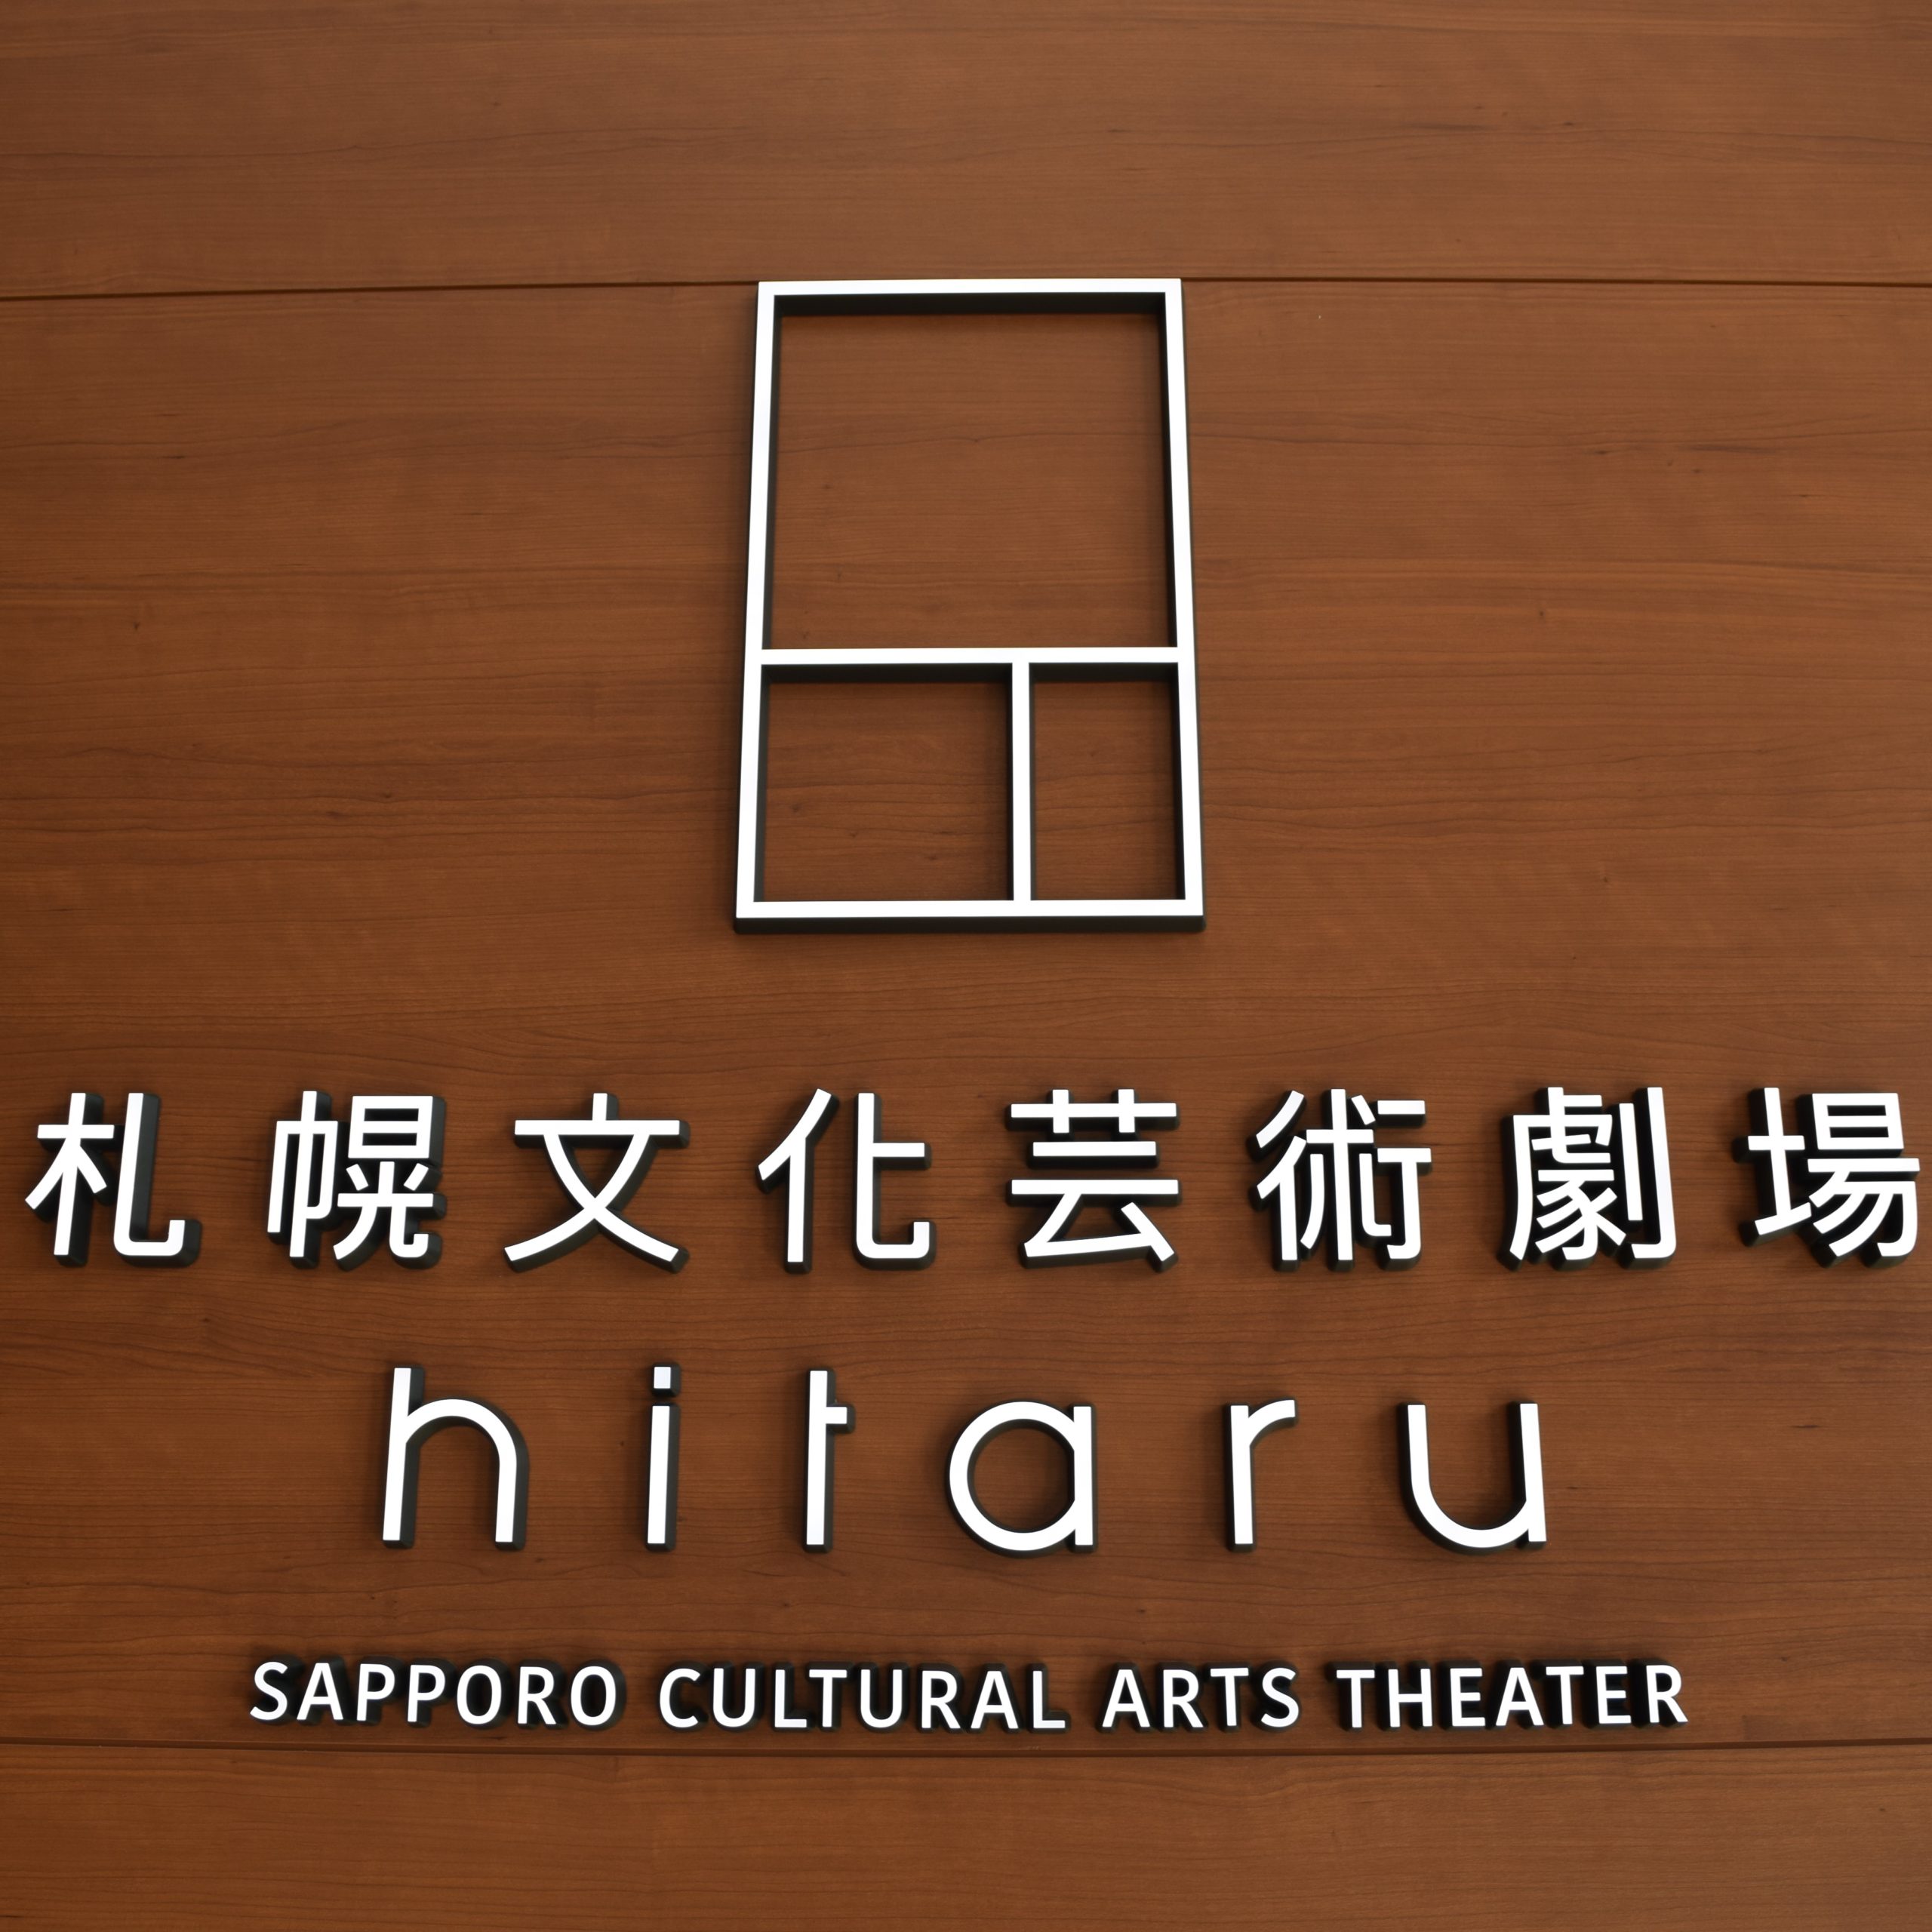 札幌文化芸術劇場「hitaru」の座席表・座席図